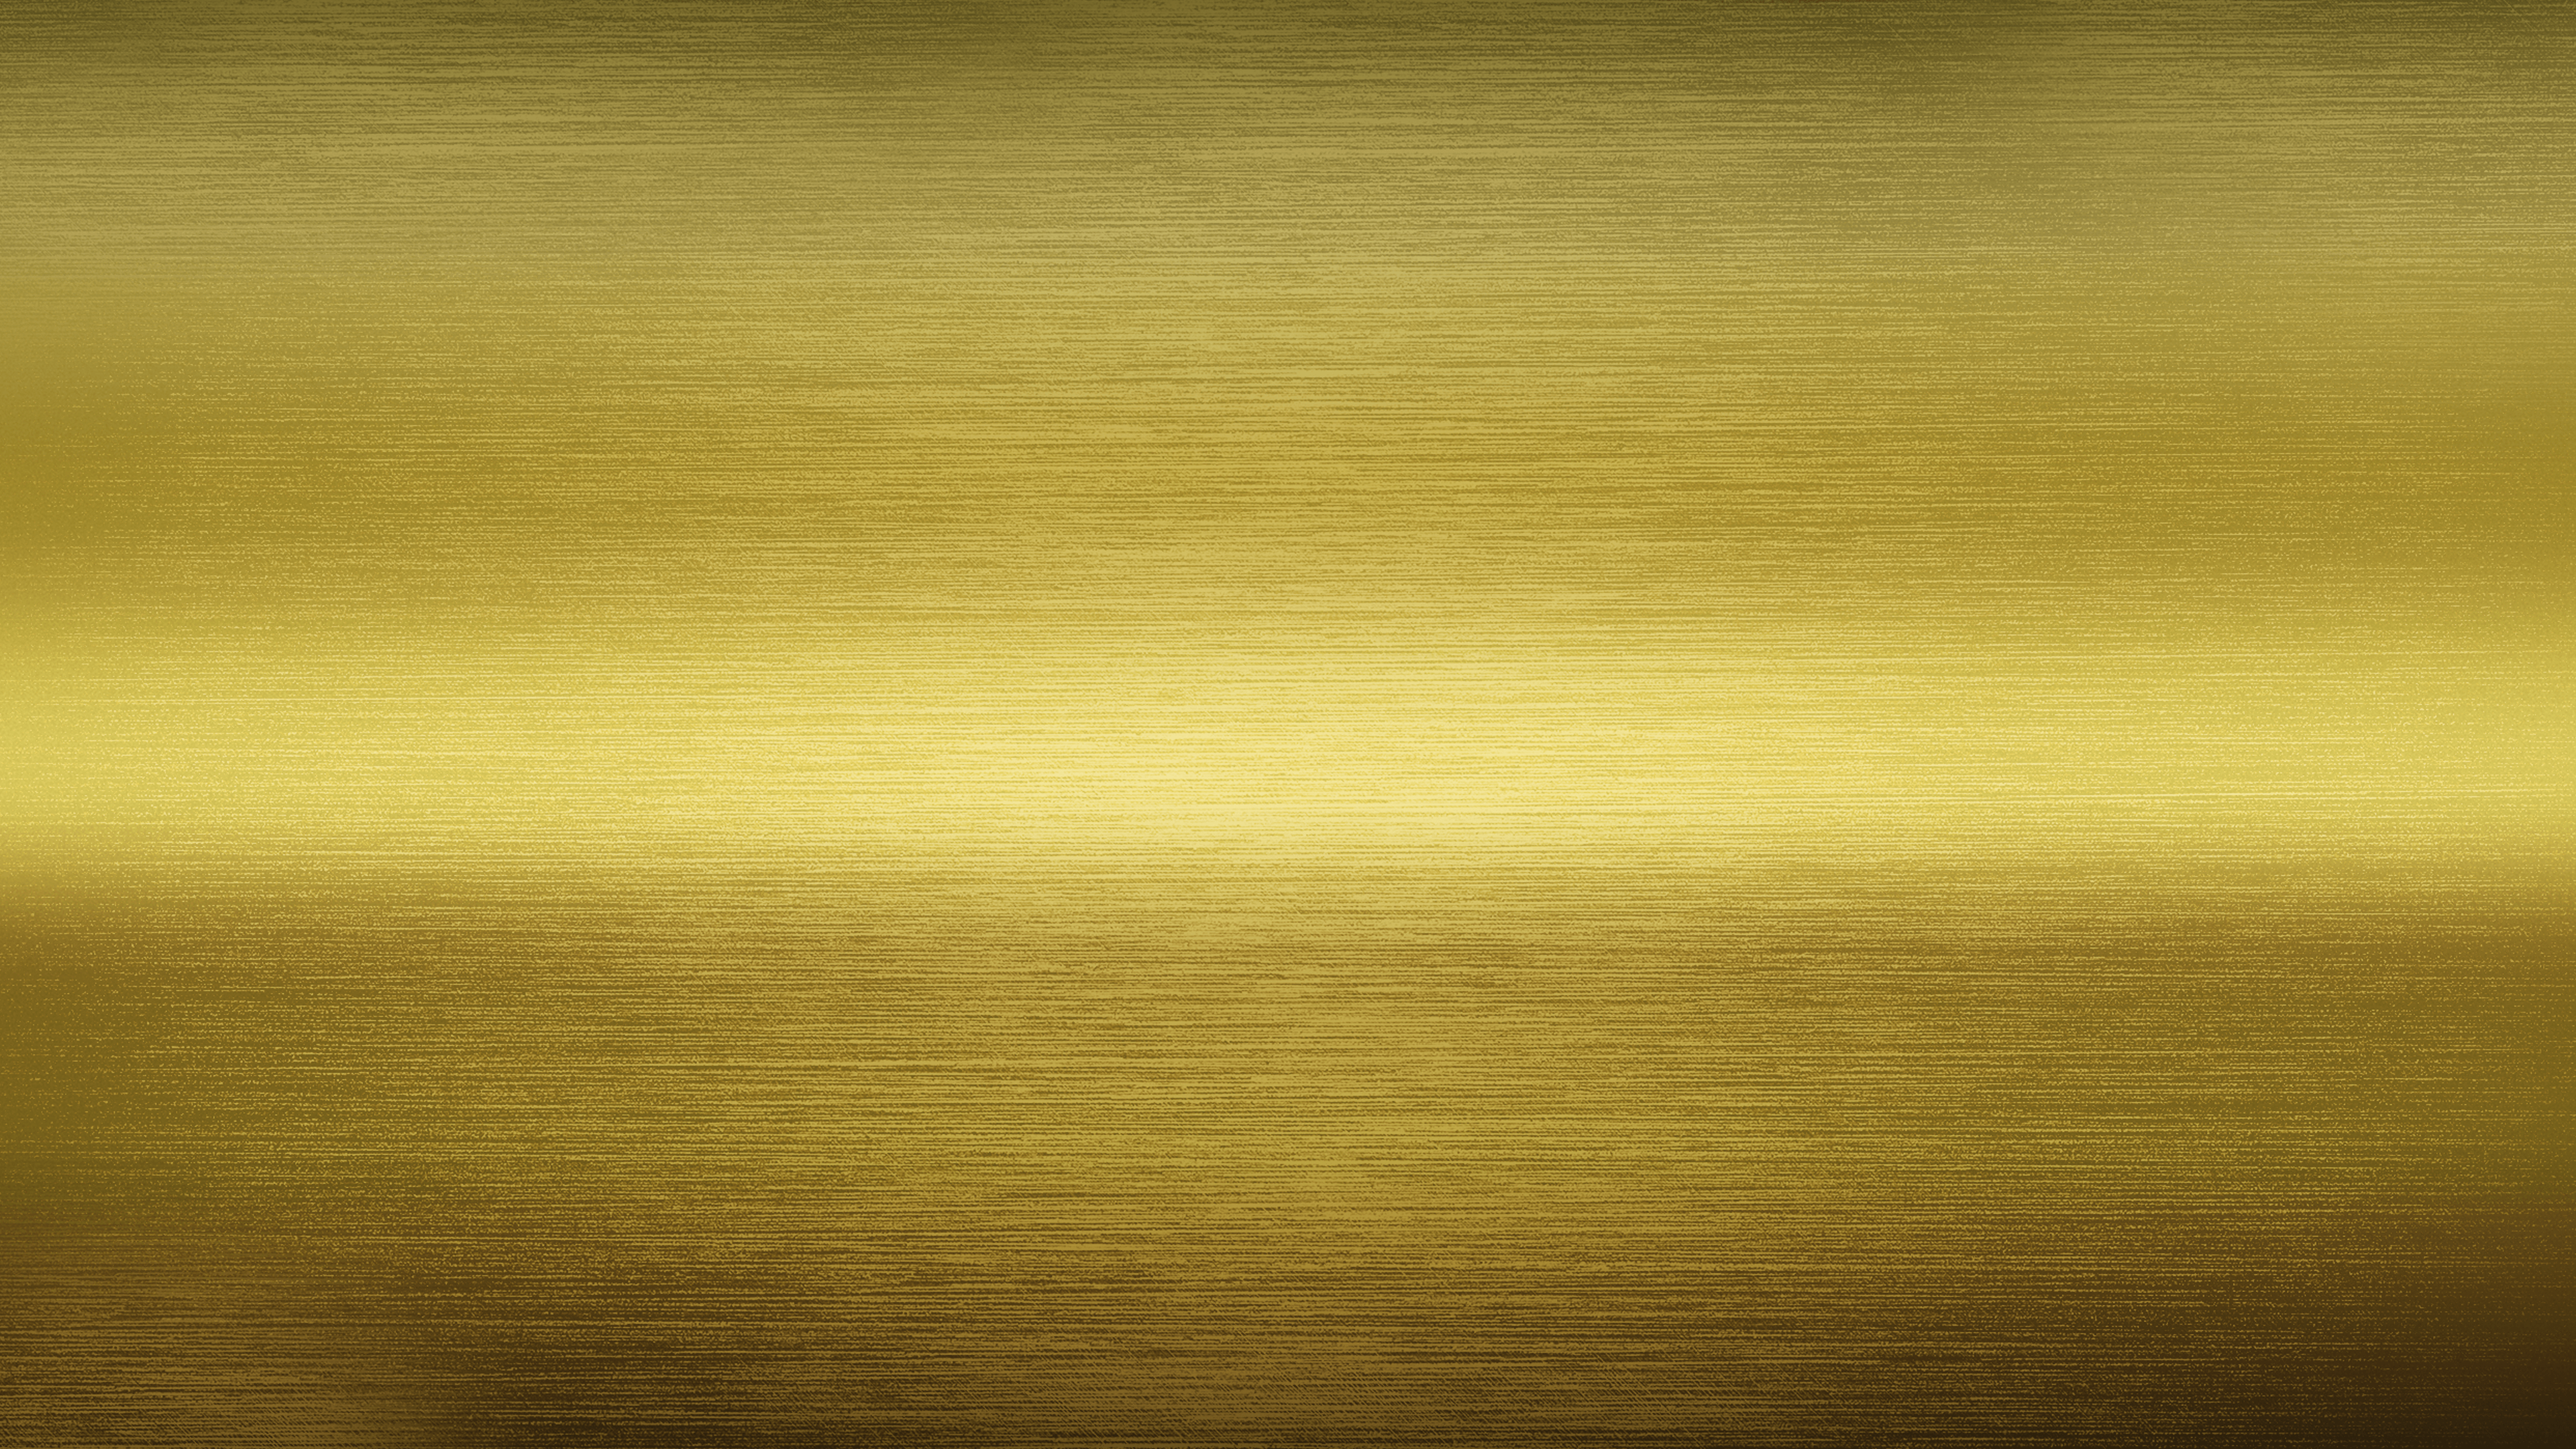 Hình nền vàng đậm mang đến cho màn hình của bạn sự nổi bật và độc đáo. Với sắc vàng đậm mạnh mẽ, bạn sẽ có một bản thu nhỏ của tinh thần của giai điệu âm nhạc. Hãy để hình nền này giúp bạn tạo ra thành phẩm tuyệt vời.